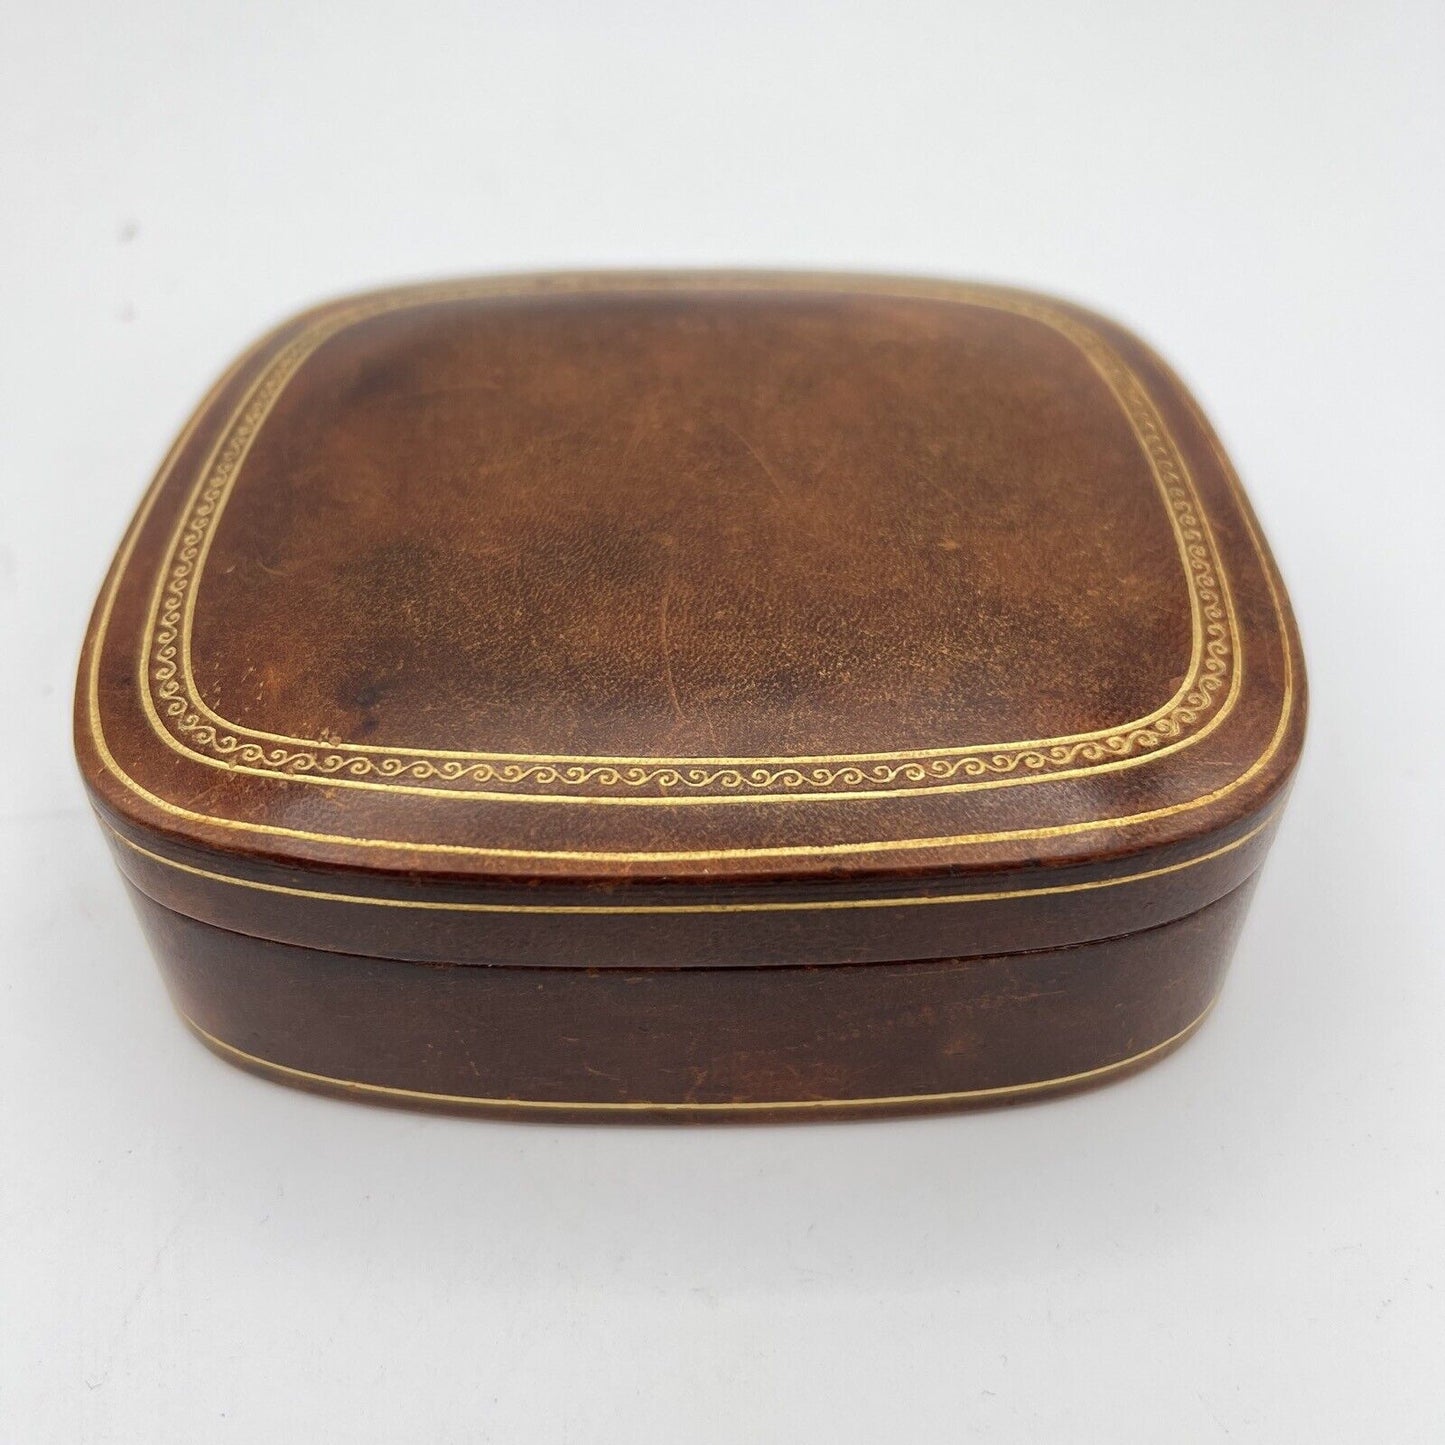 Scatola antica in pelle marrone da scrivania custodia scatolina porta oggetti